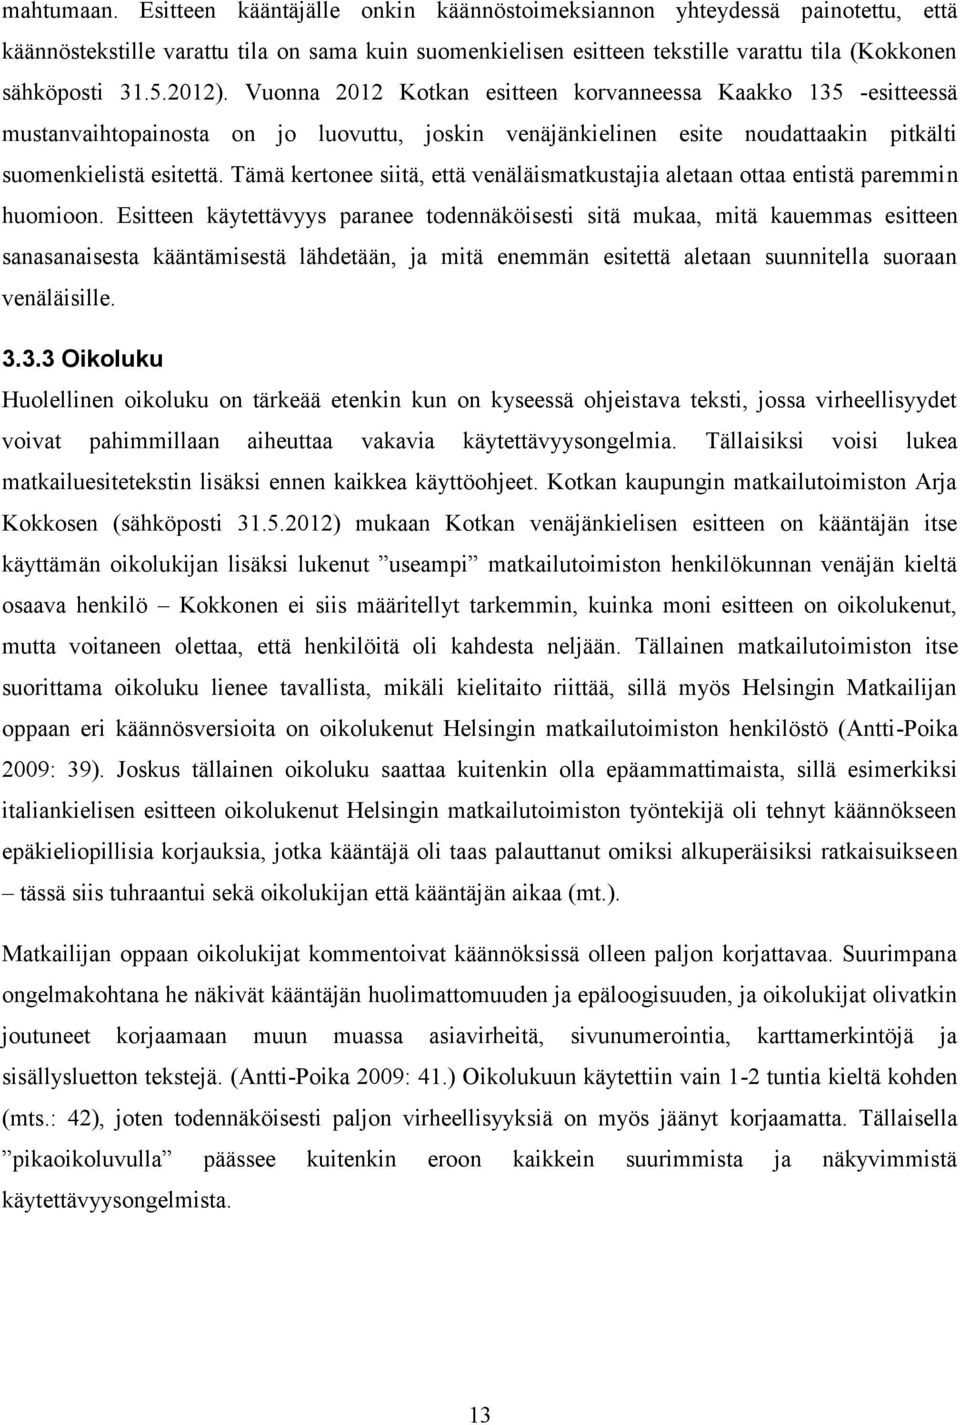 Vuonna 2012 Kotkan esitteen korvanneessa Kaakko 135 -esitteessä mustanvaihtopainosta on jo luovuttu, joskin venäjänkielinen esite noudattaakin pitkälti suomenkielistä esitettä.